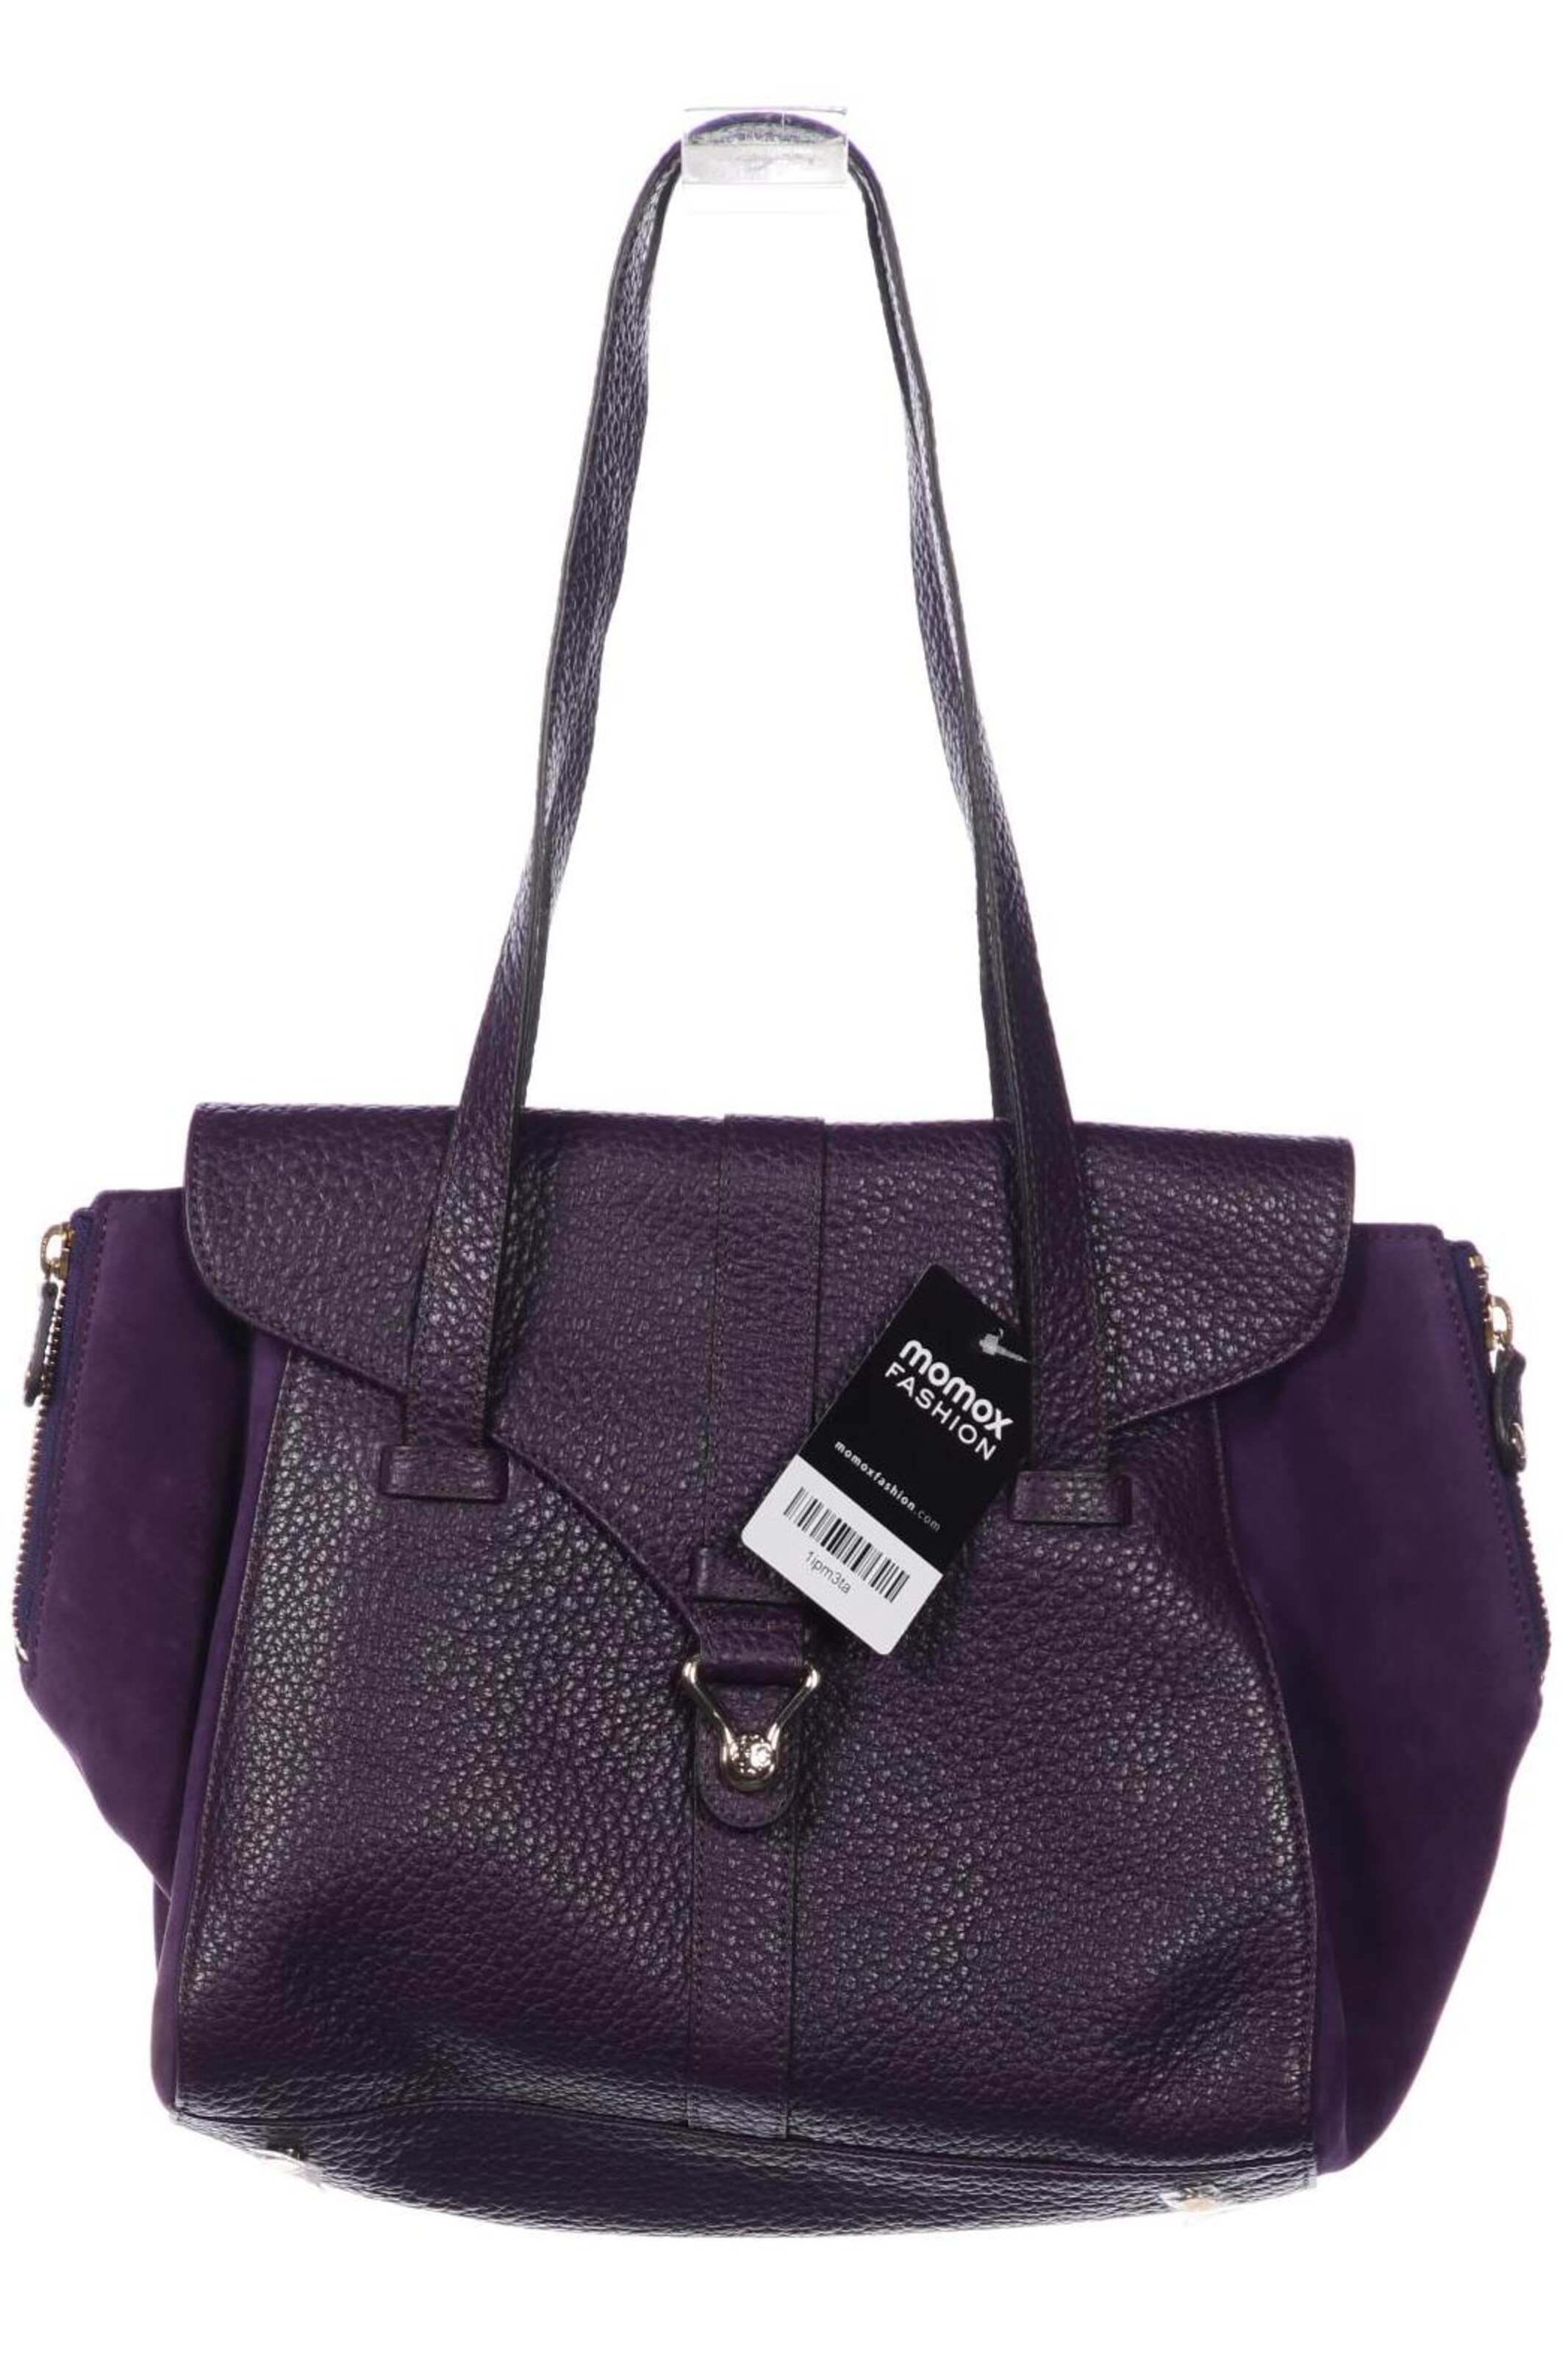 LK Bennett Karla leather shoulder bag | Shoulder bag, Sparkly purse, Handbag  straps